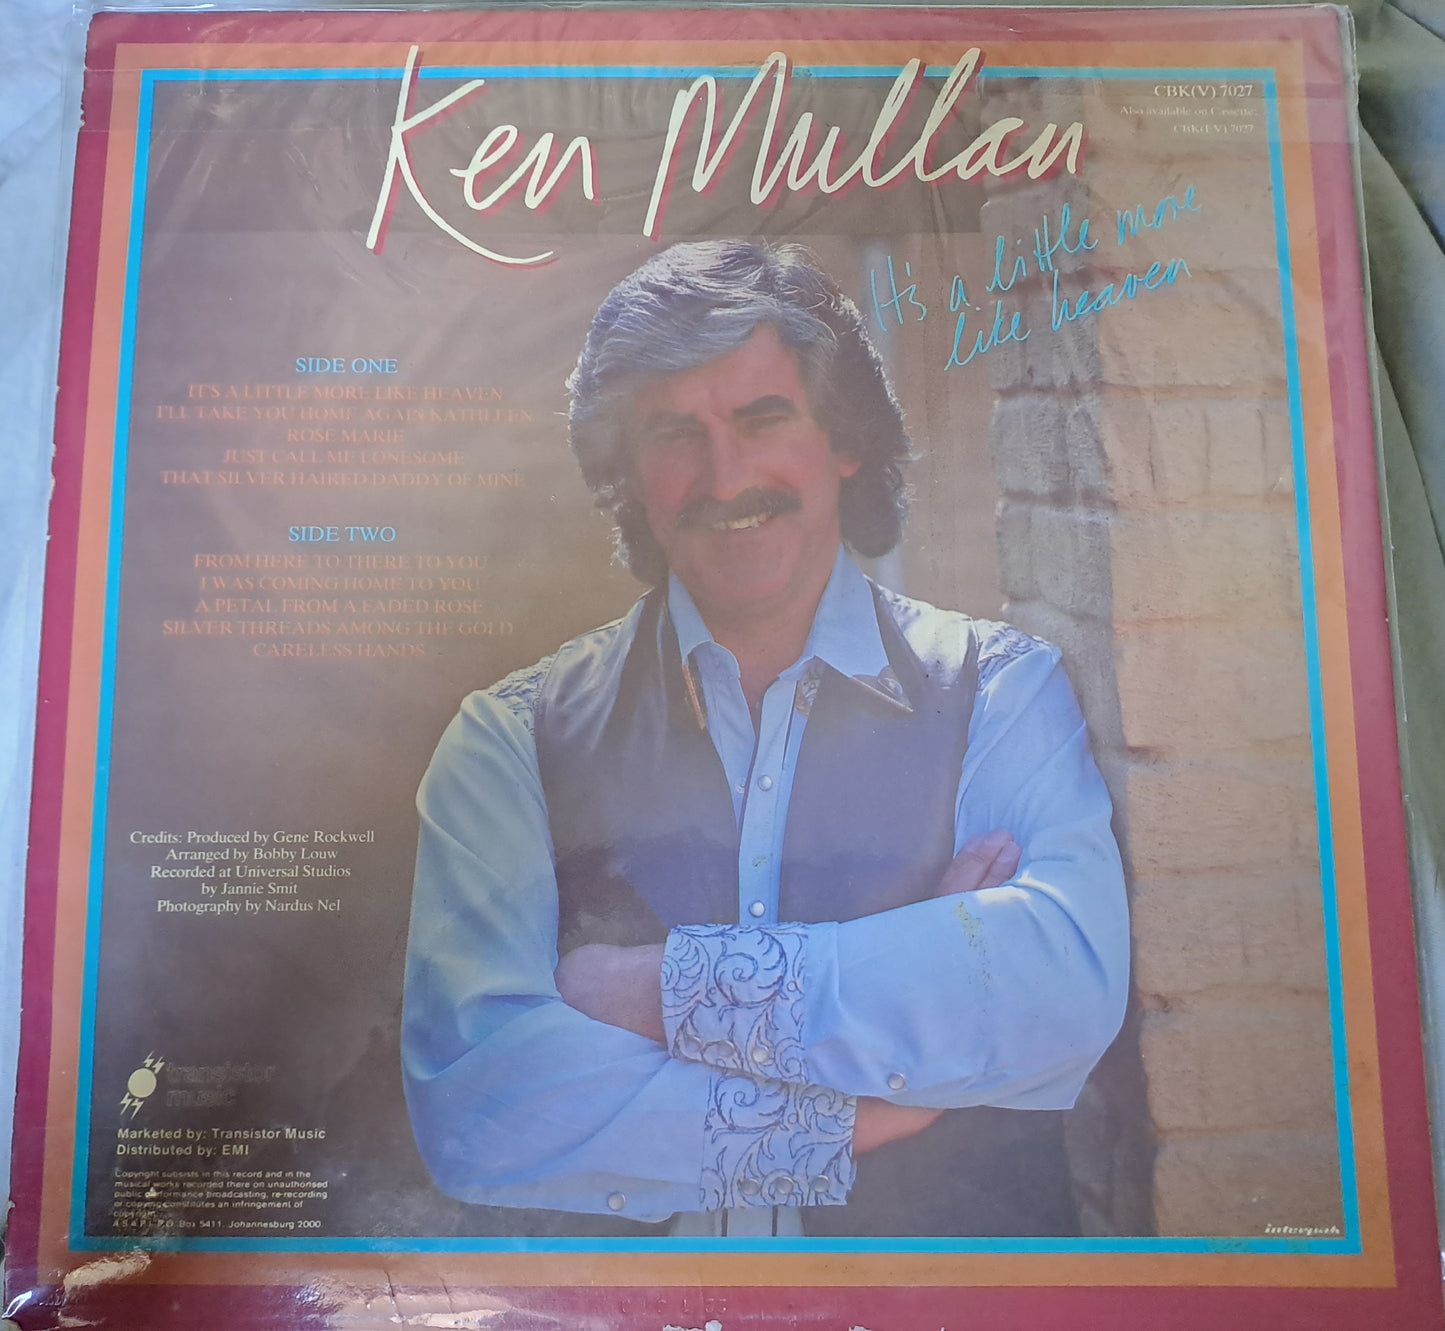 Ken Mullan - It's A Little More Like Heaven